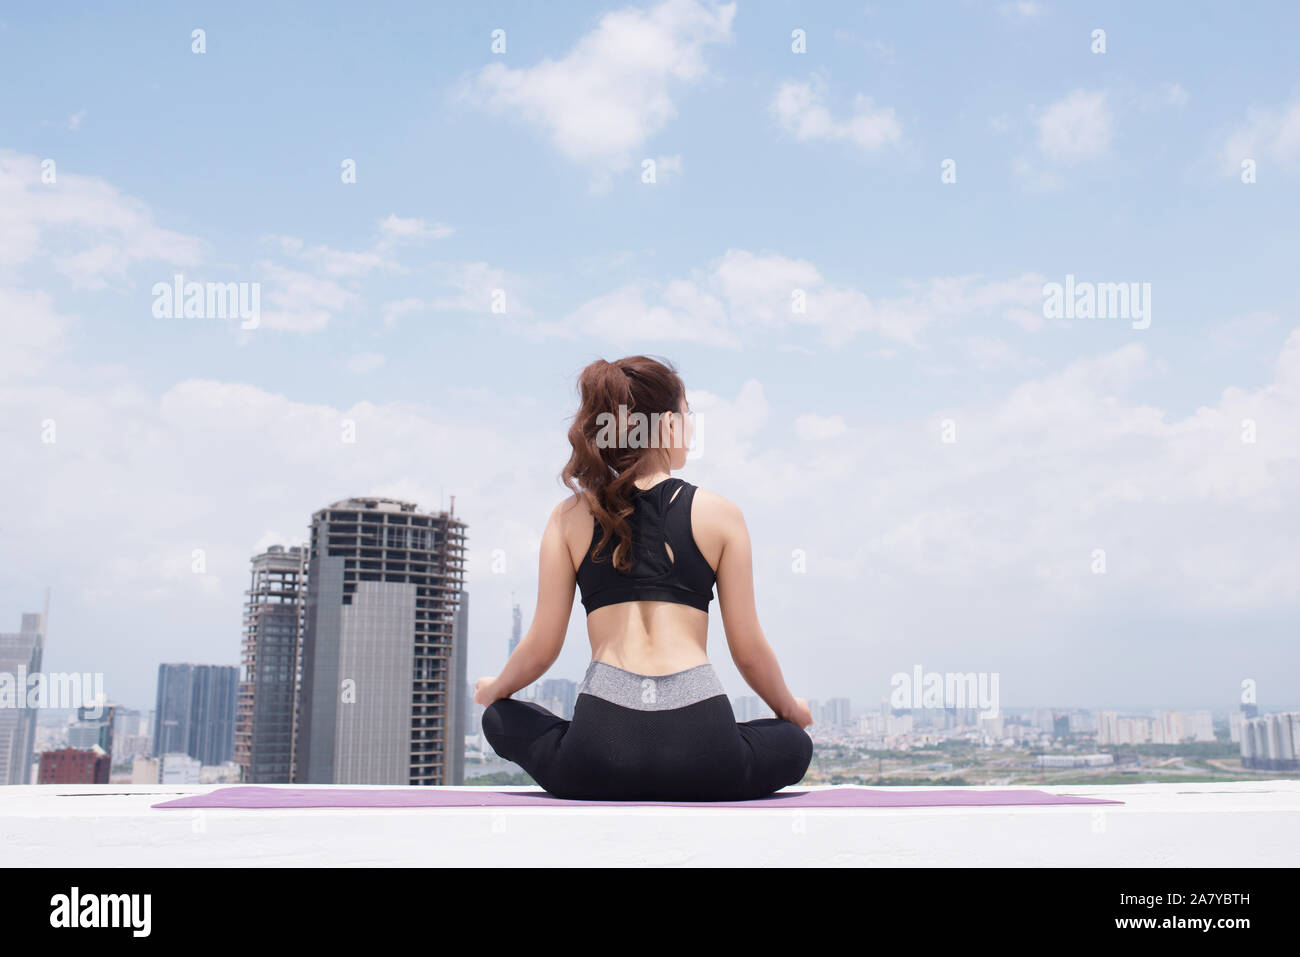 Ruhige junge Sportlerin im aktiven tragen sitzen in Pose während Yoga Ausbildung auf Gebäude auf dem Dach Stockfoto